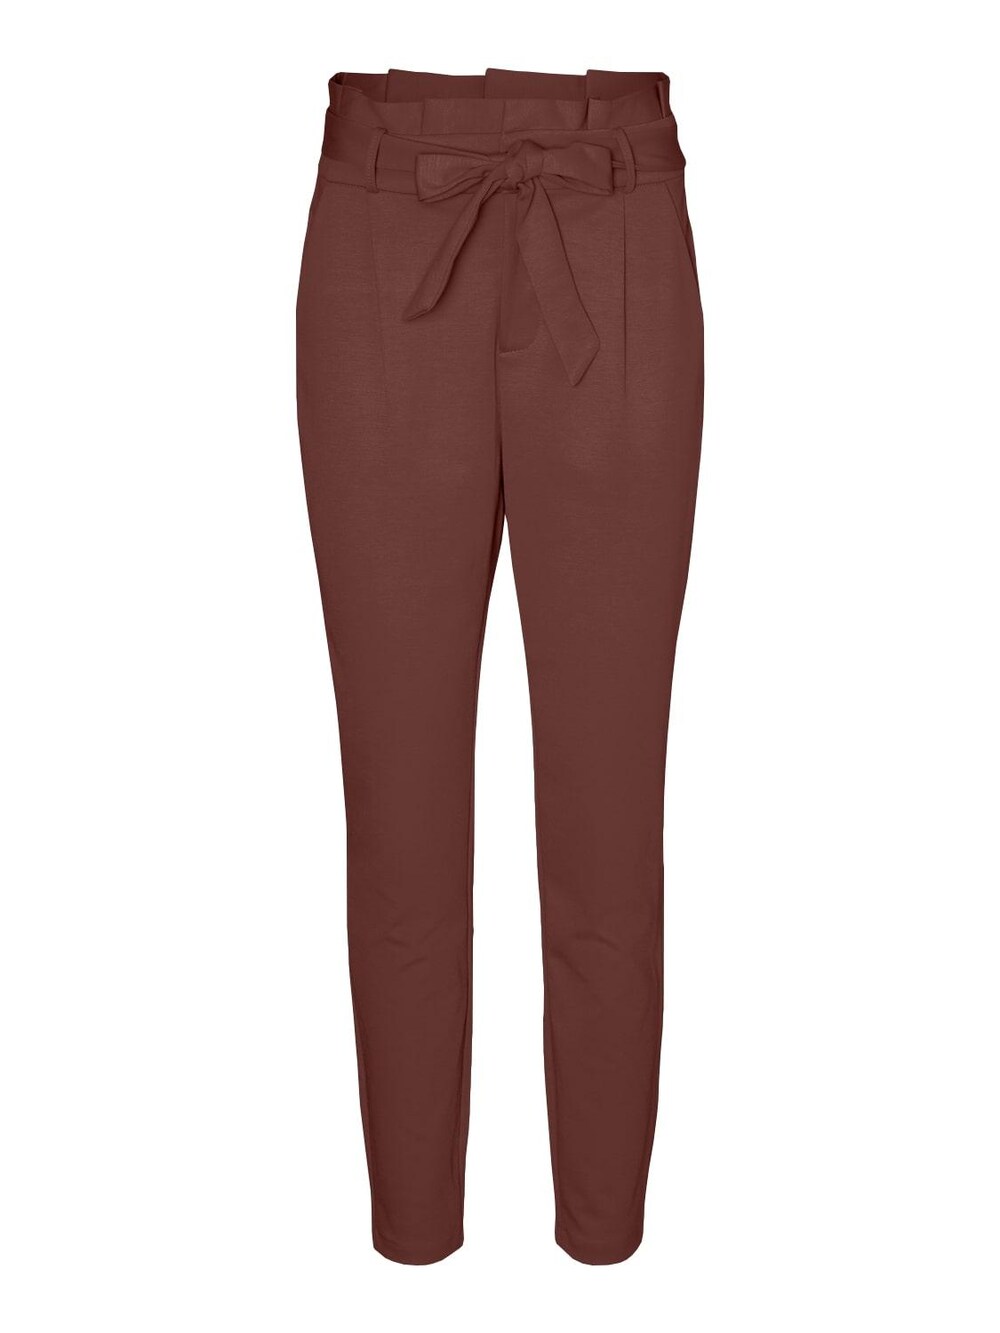 Зауженные брюки со складками спереди Vero Moda LUCCA, коричневый